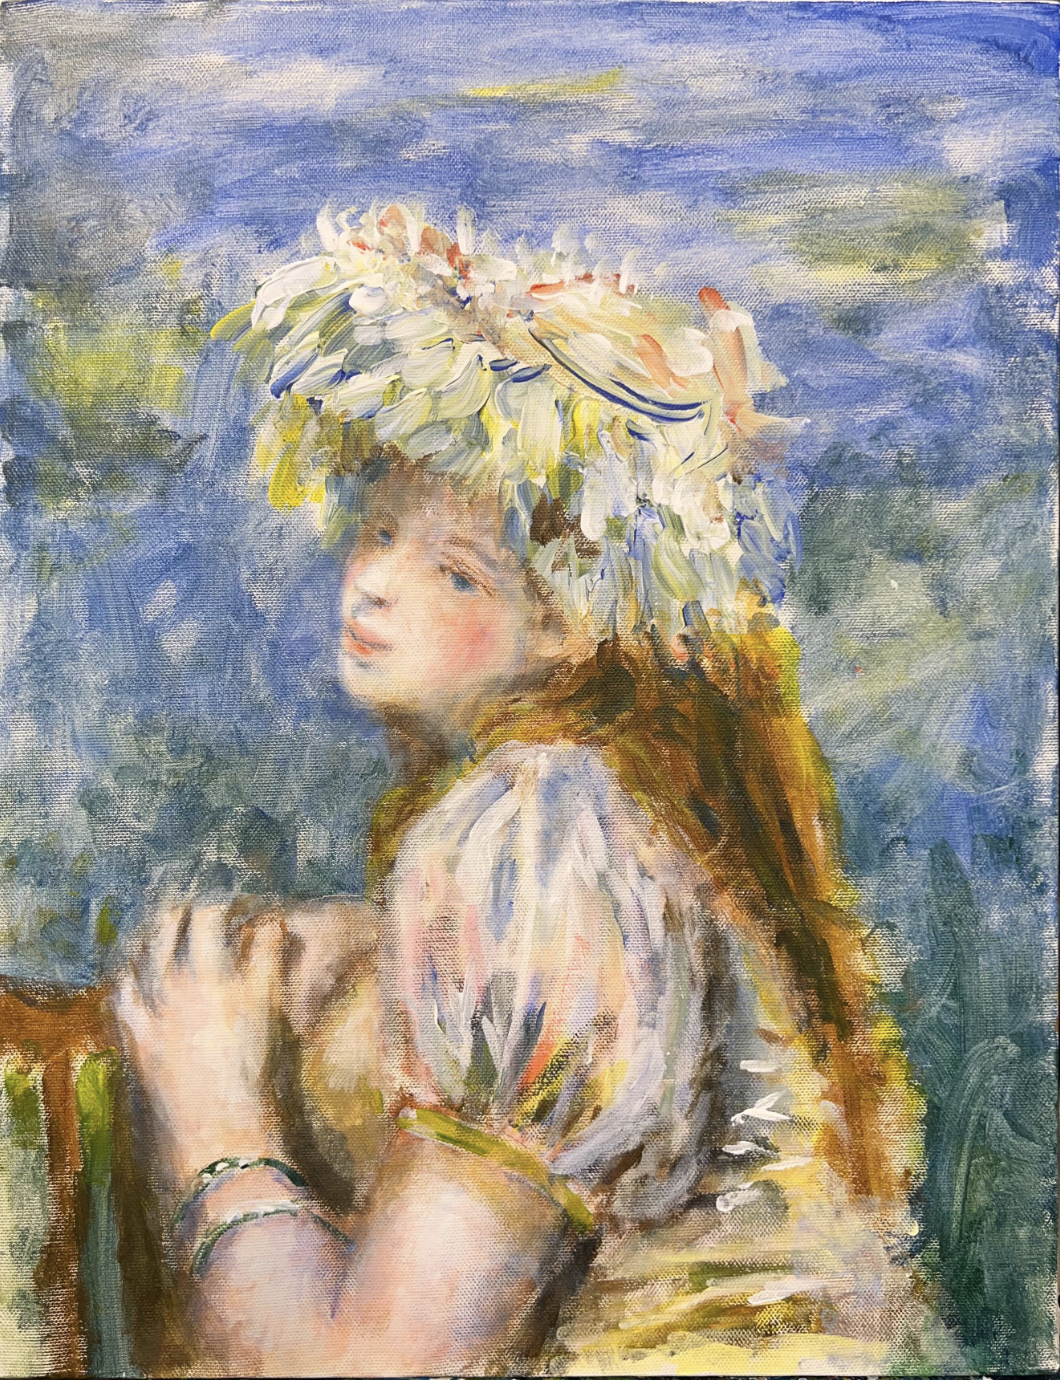 【日本橋】3月29日 (金) 19:00-22:00 | オーギュスト・ルノワール | レース帽子の少女 (Girl with a Lace Hat by Pierre-Auguste Renoir at Nihon-bashi)